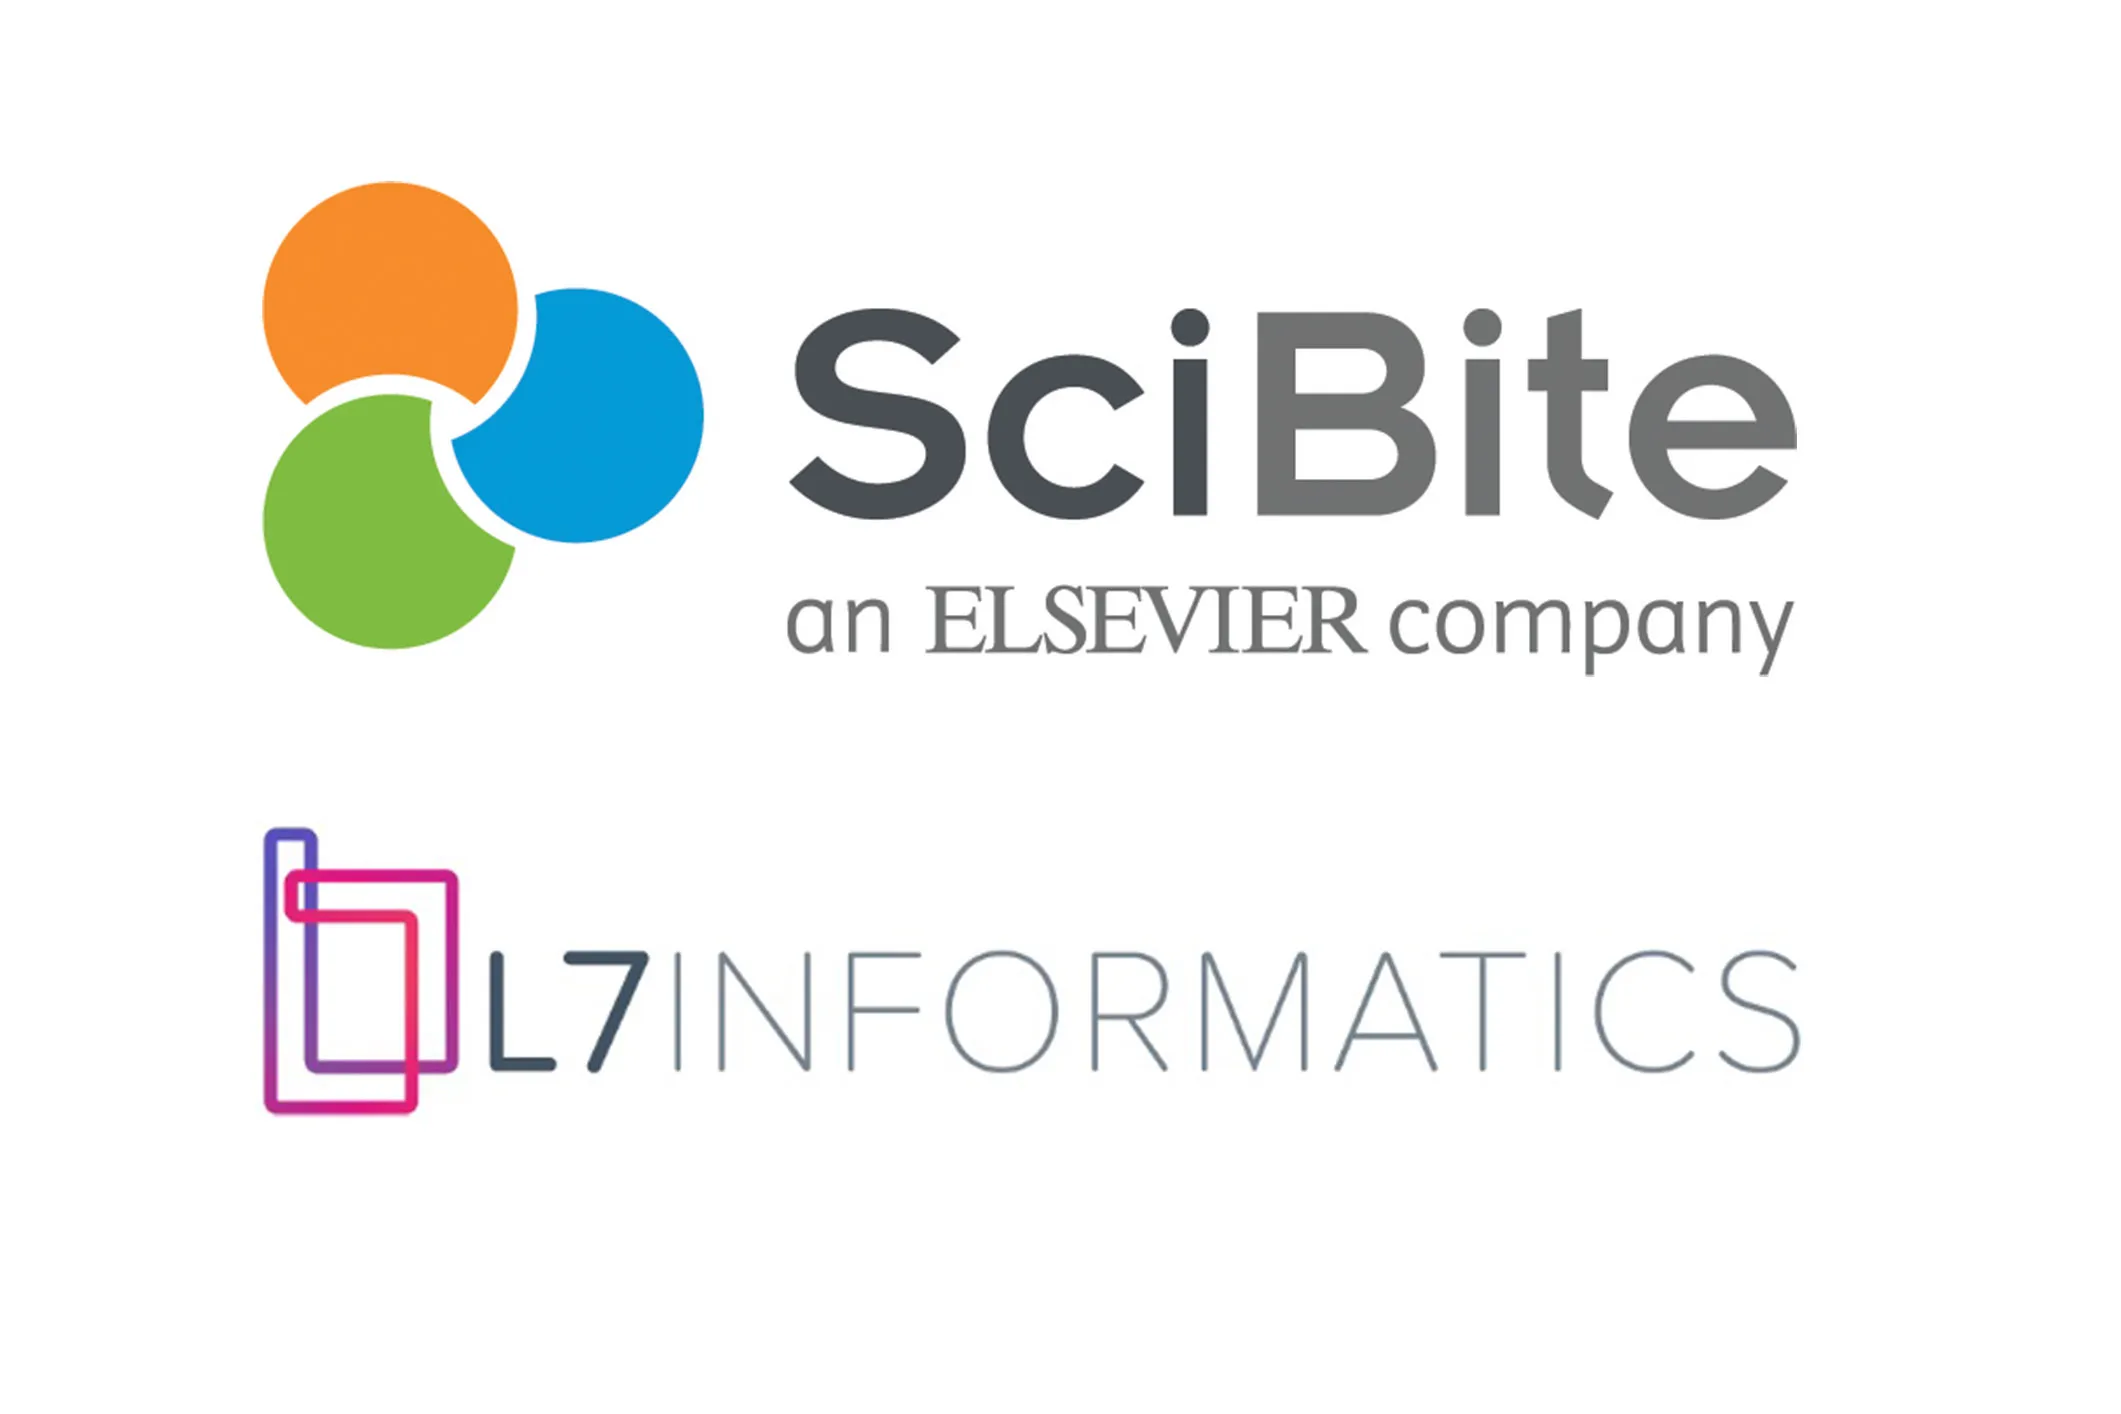 SciBite and L7 Informatics